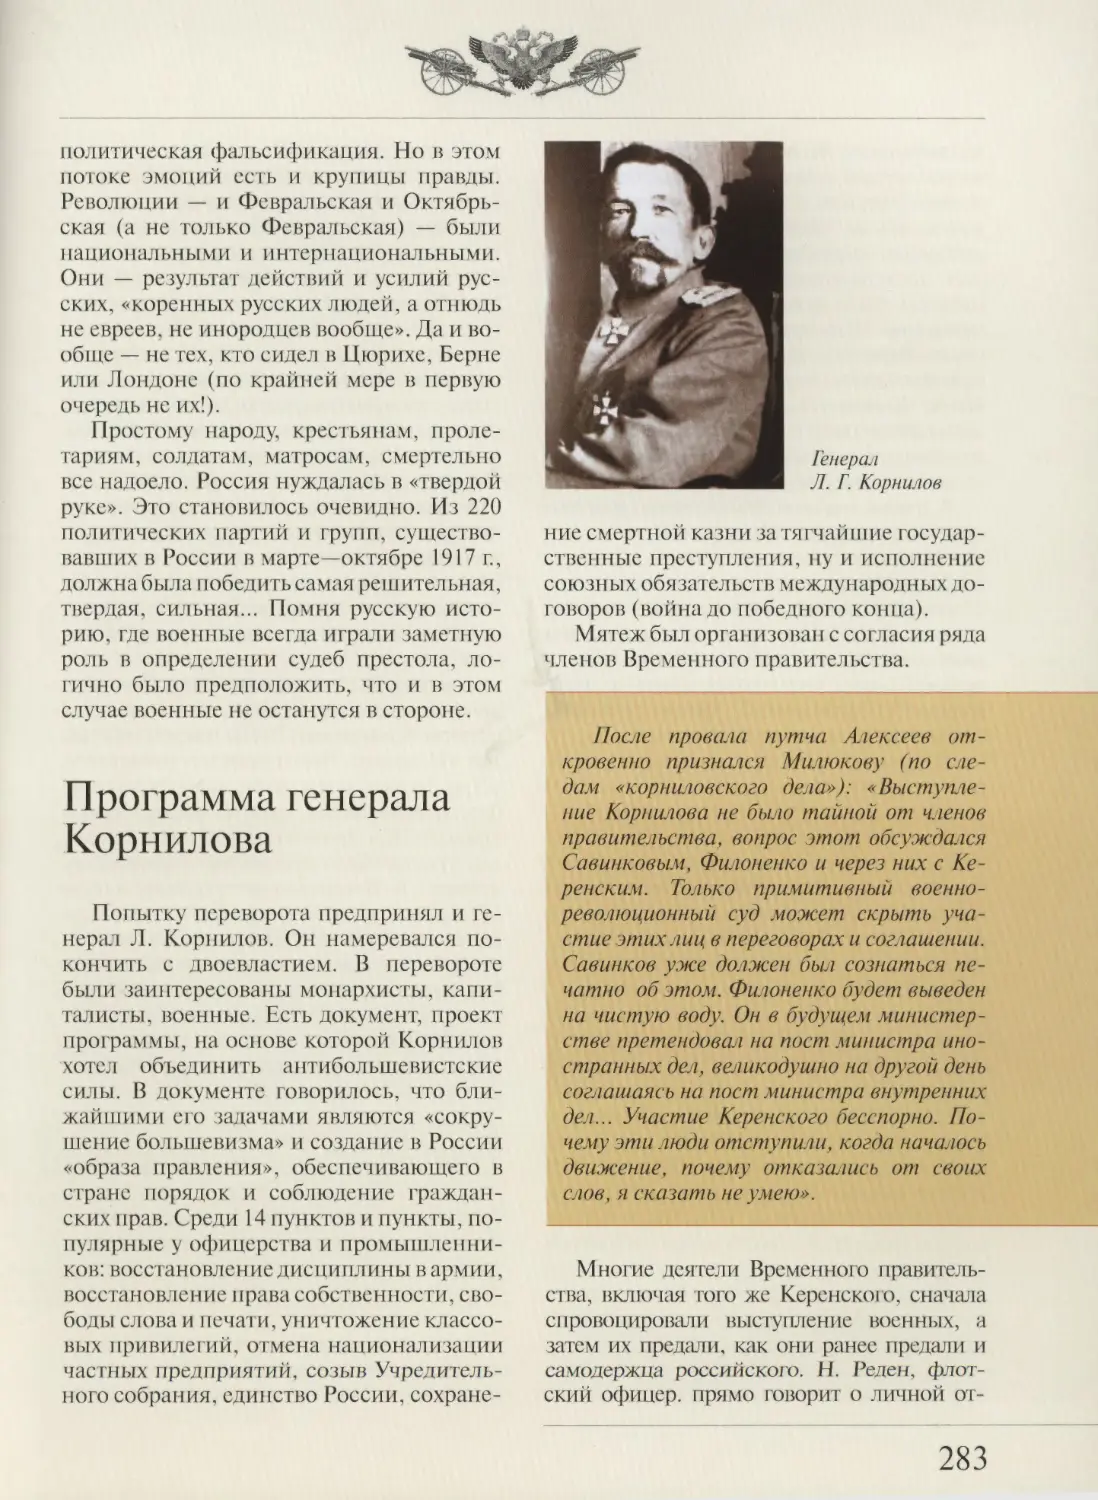 Программа генерала Корнилова